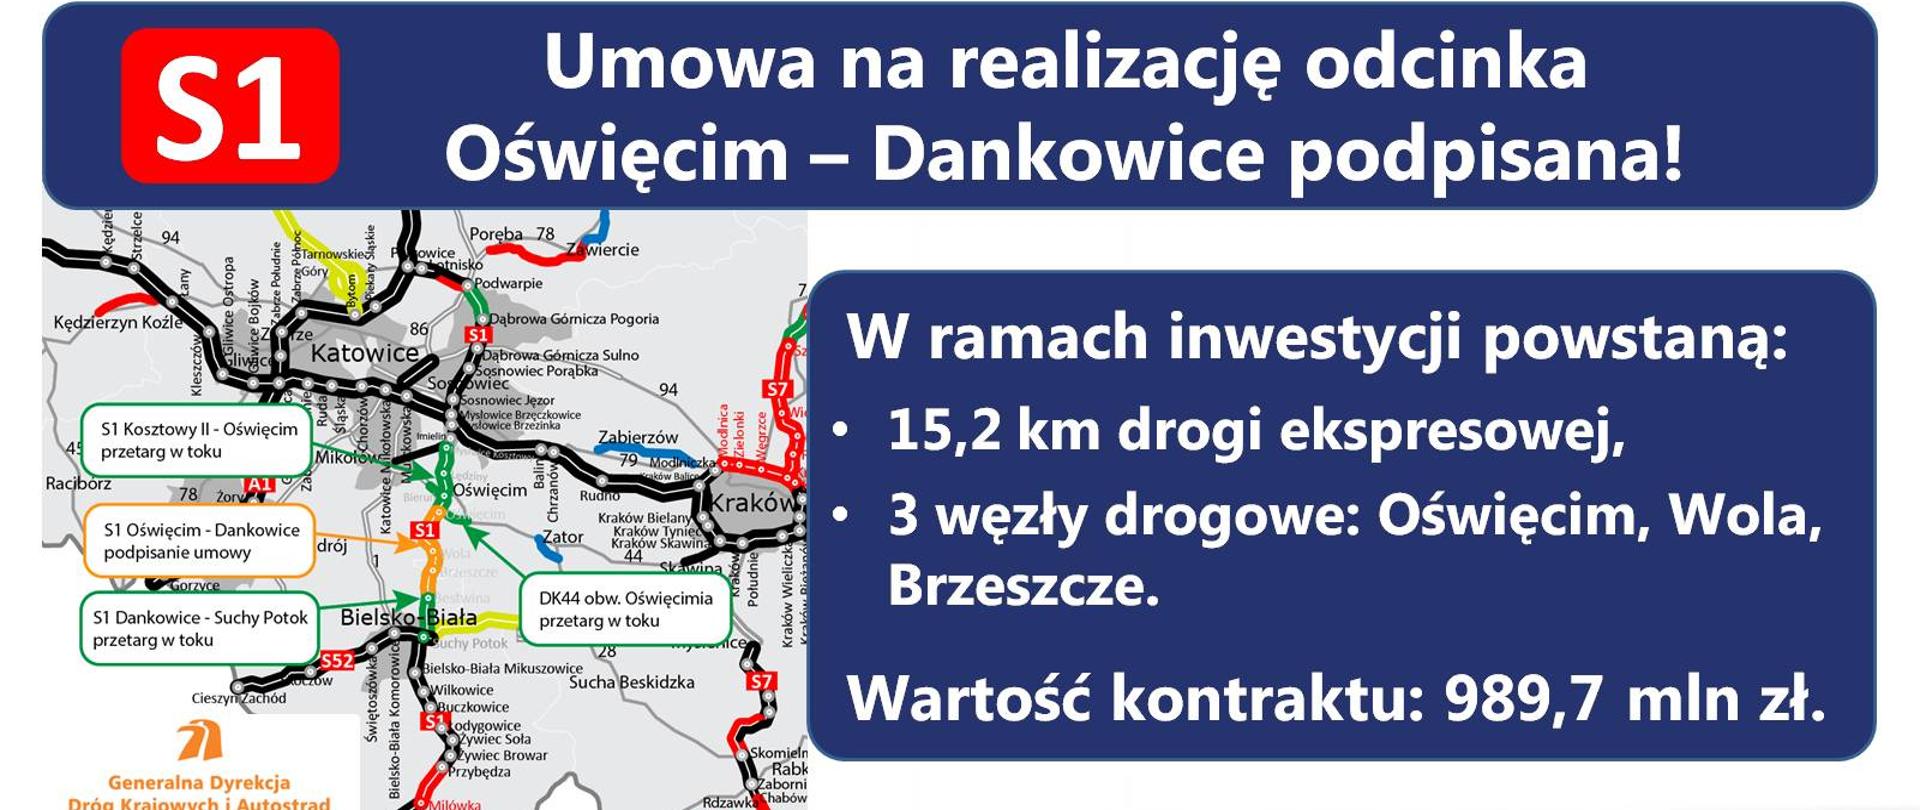 Infografika przedstawia szczegóły drogi ekspresowej S1 na odcinku Oświęcim - Dankowice